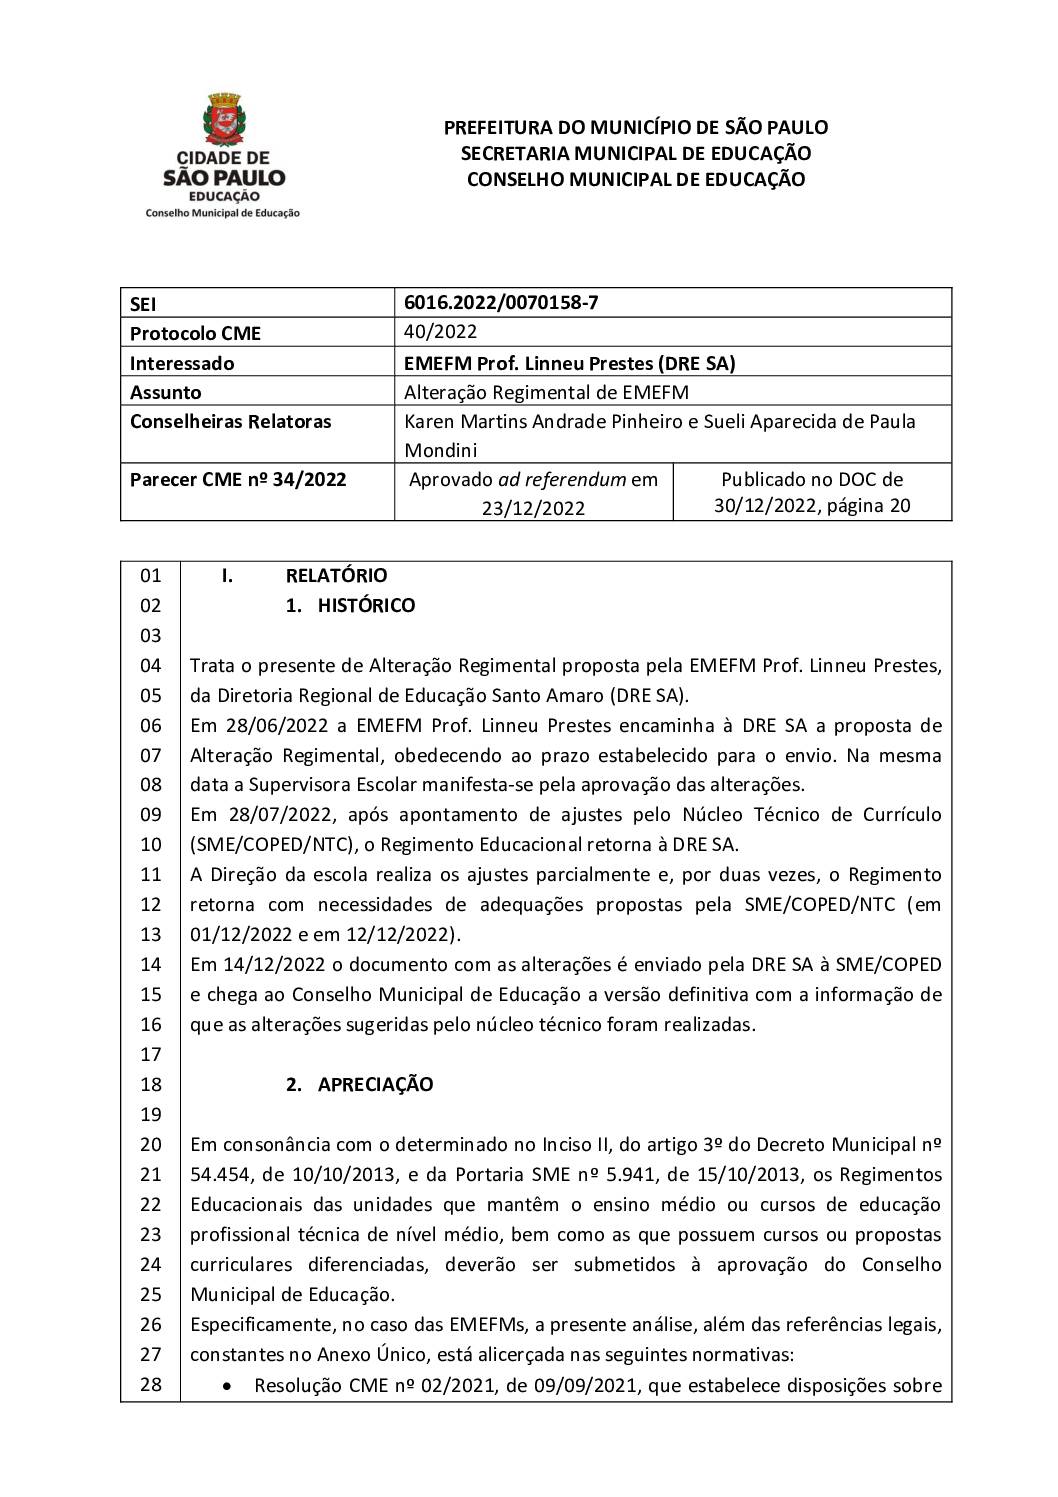 Parecer CME nº 34/2022 - EMEFM Professor Linneu Prestes (DRE SA) - Alteração Regimental de EMEFM